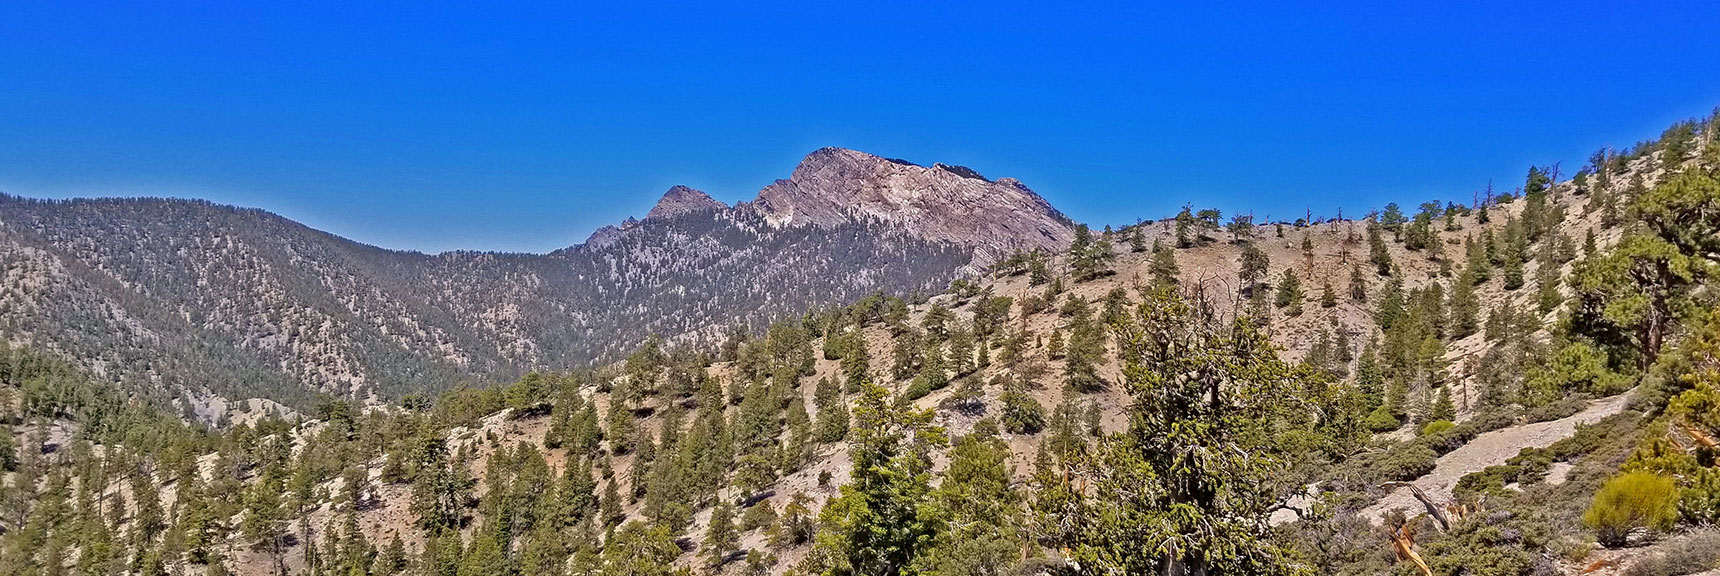 Higher Elevation View of the Sisters Peaks | Macks Peak | Mt Charleston Wilderness | Spring Mountains, Nevada